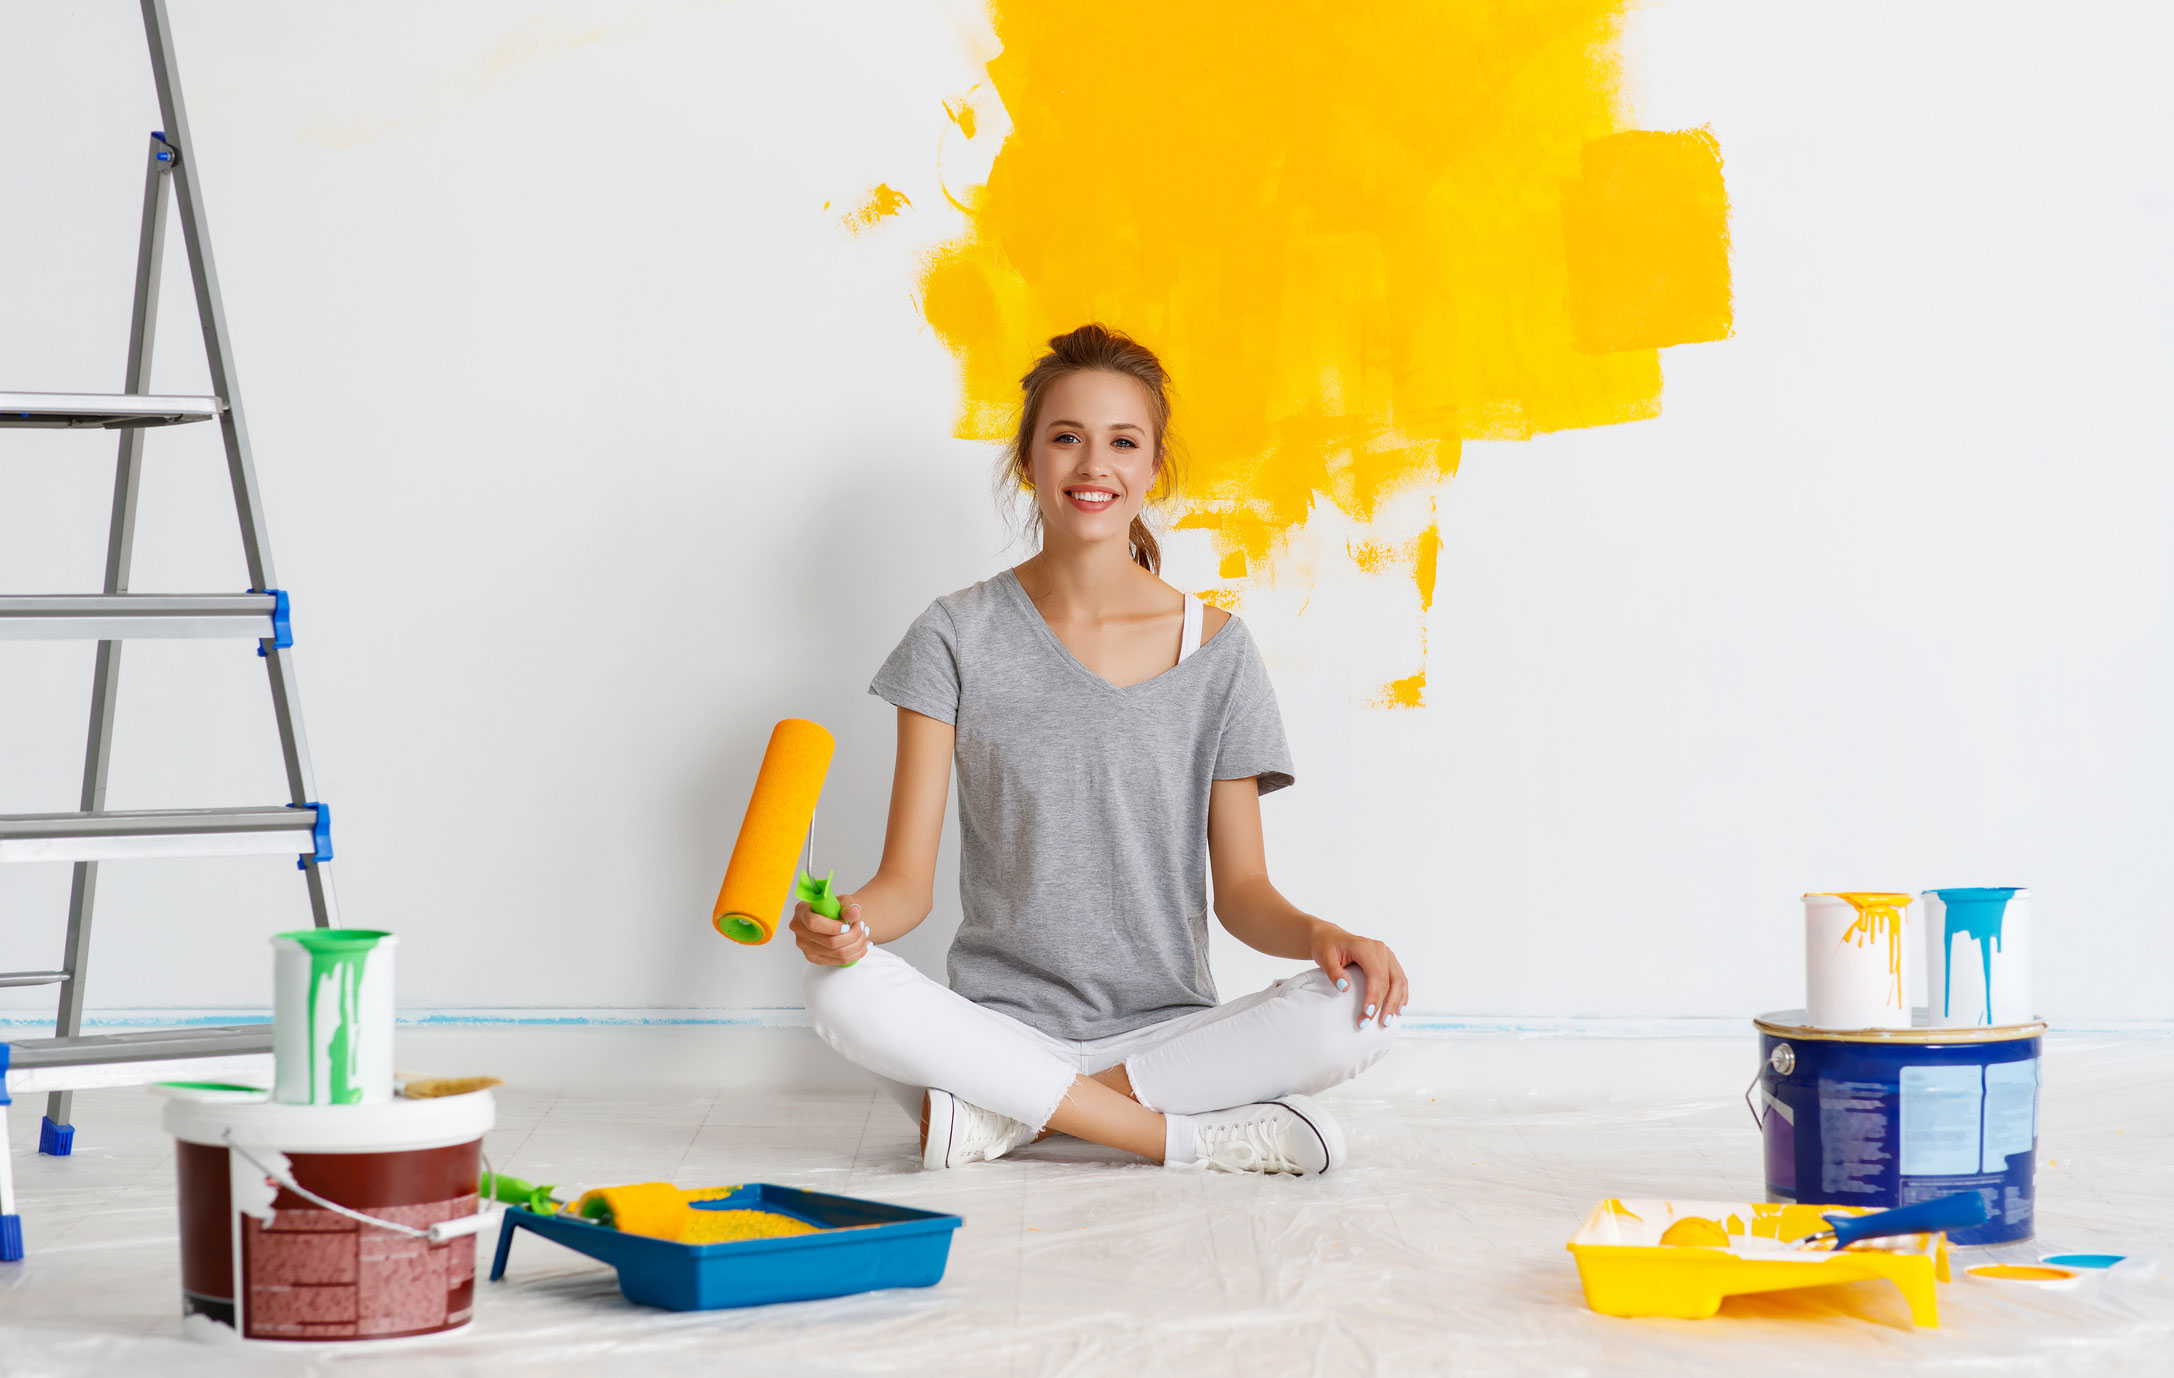 Junge Frau sitzt mit Malerbuerste vor gelb gestrichener Wand